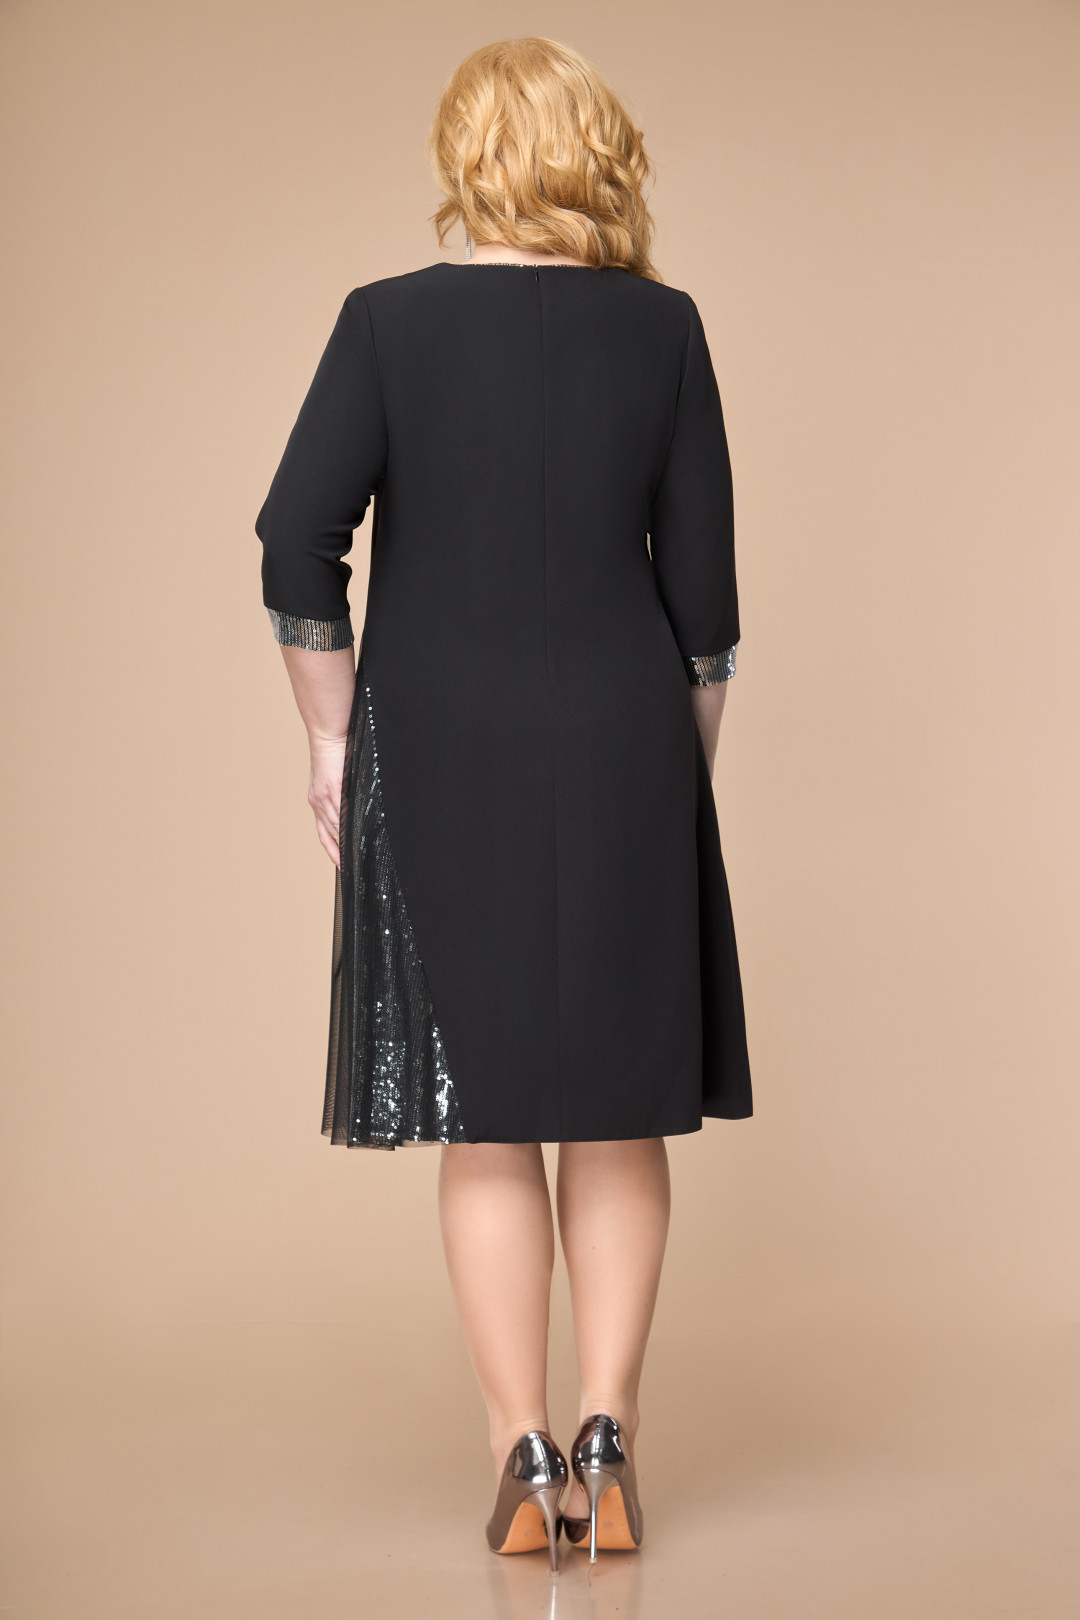 Платье Светлана-Стиль 1839 черный